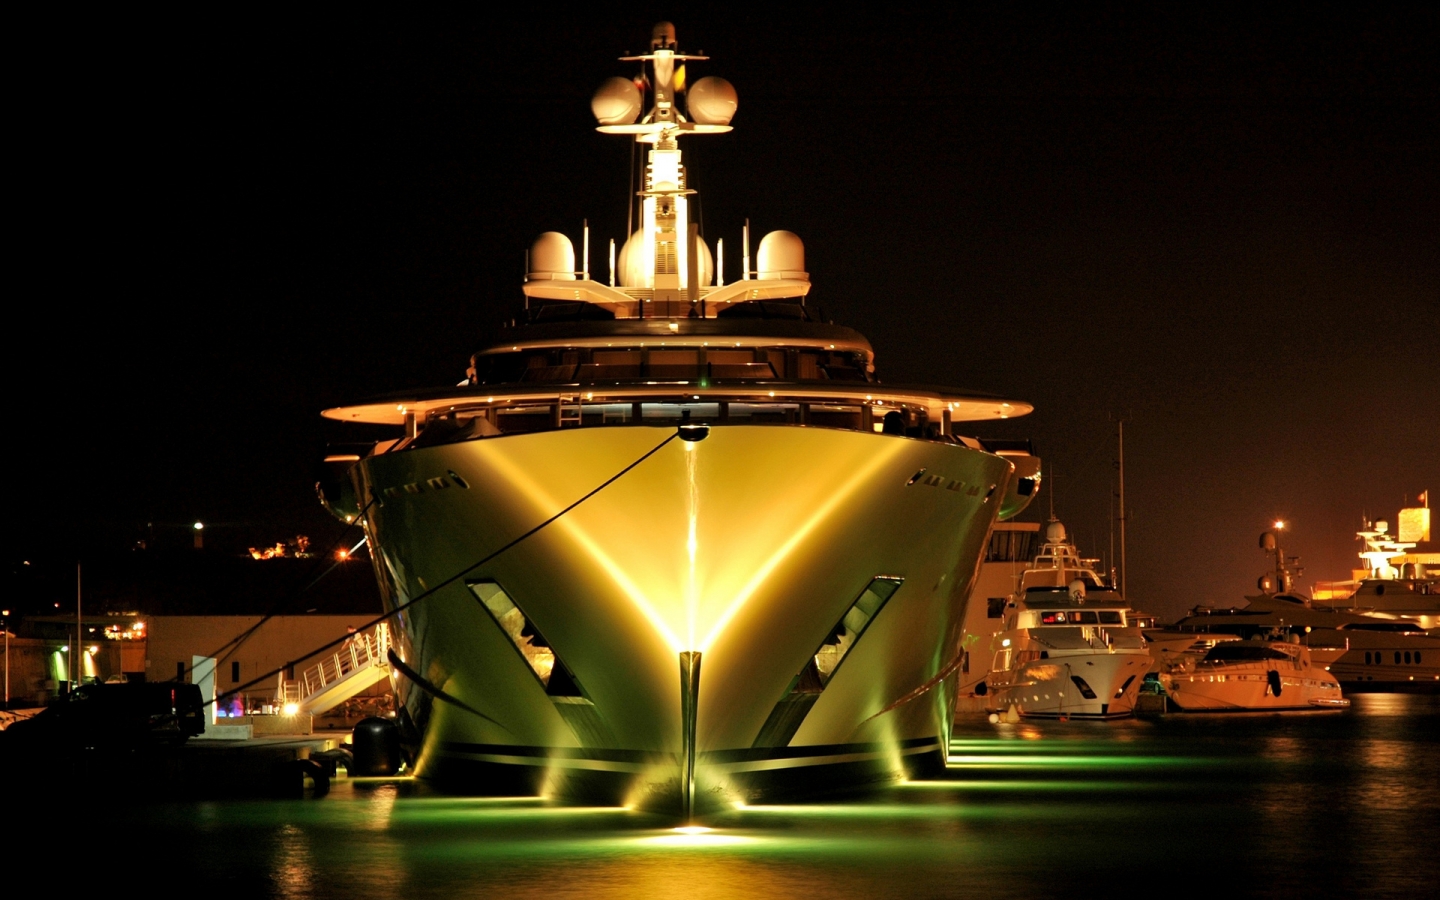 Pelorus Yacht for 1440 x 900 widescreen resolution